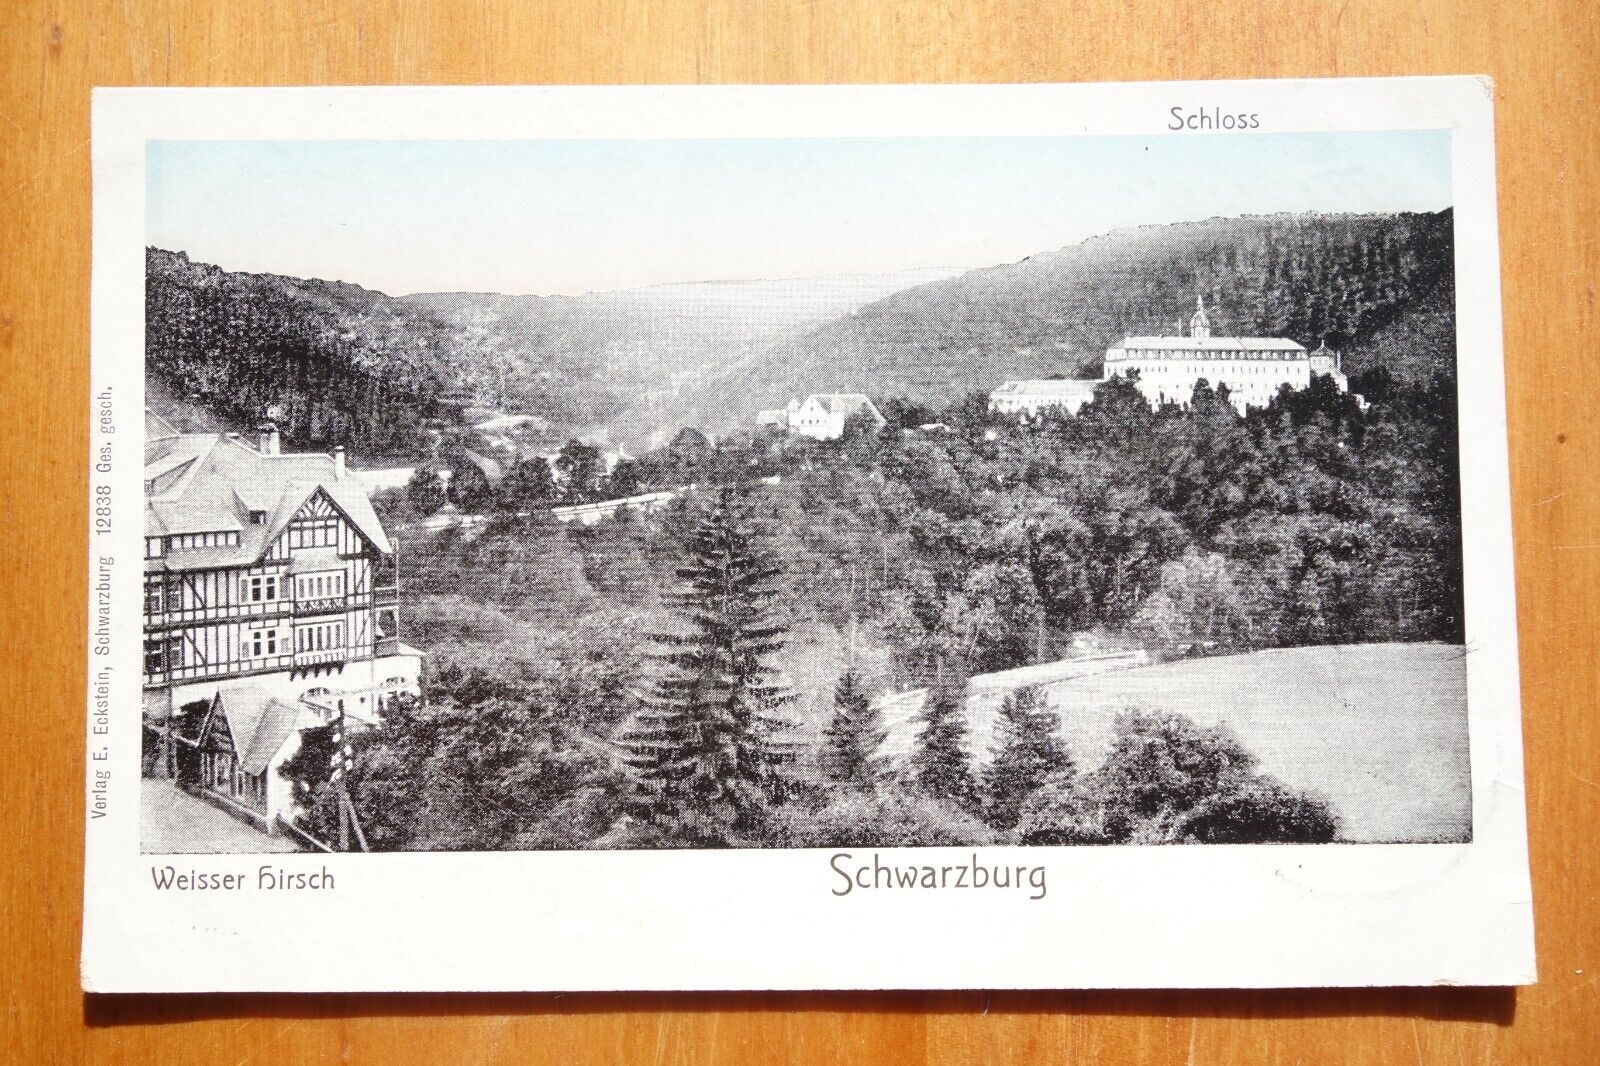 Weisser Hirsch & Schloss, Schwarzburg GERMANY postcard pmk 1913